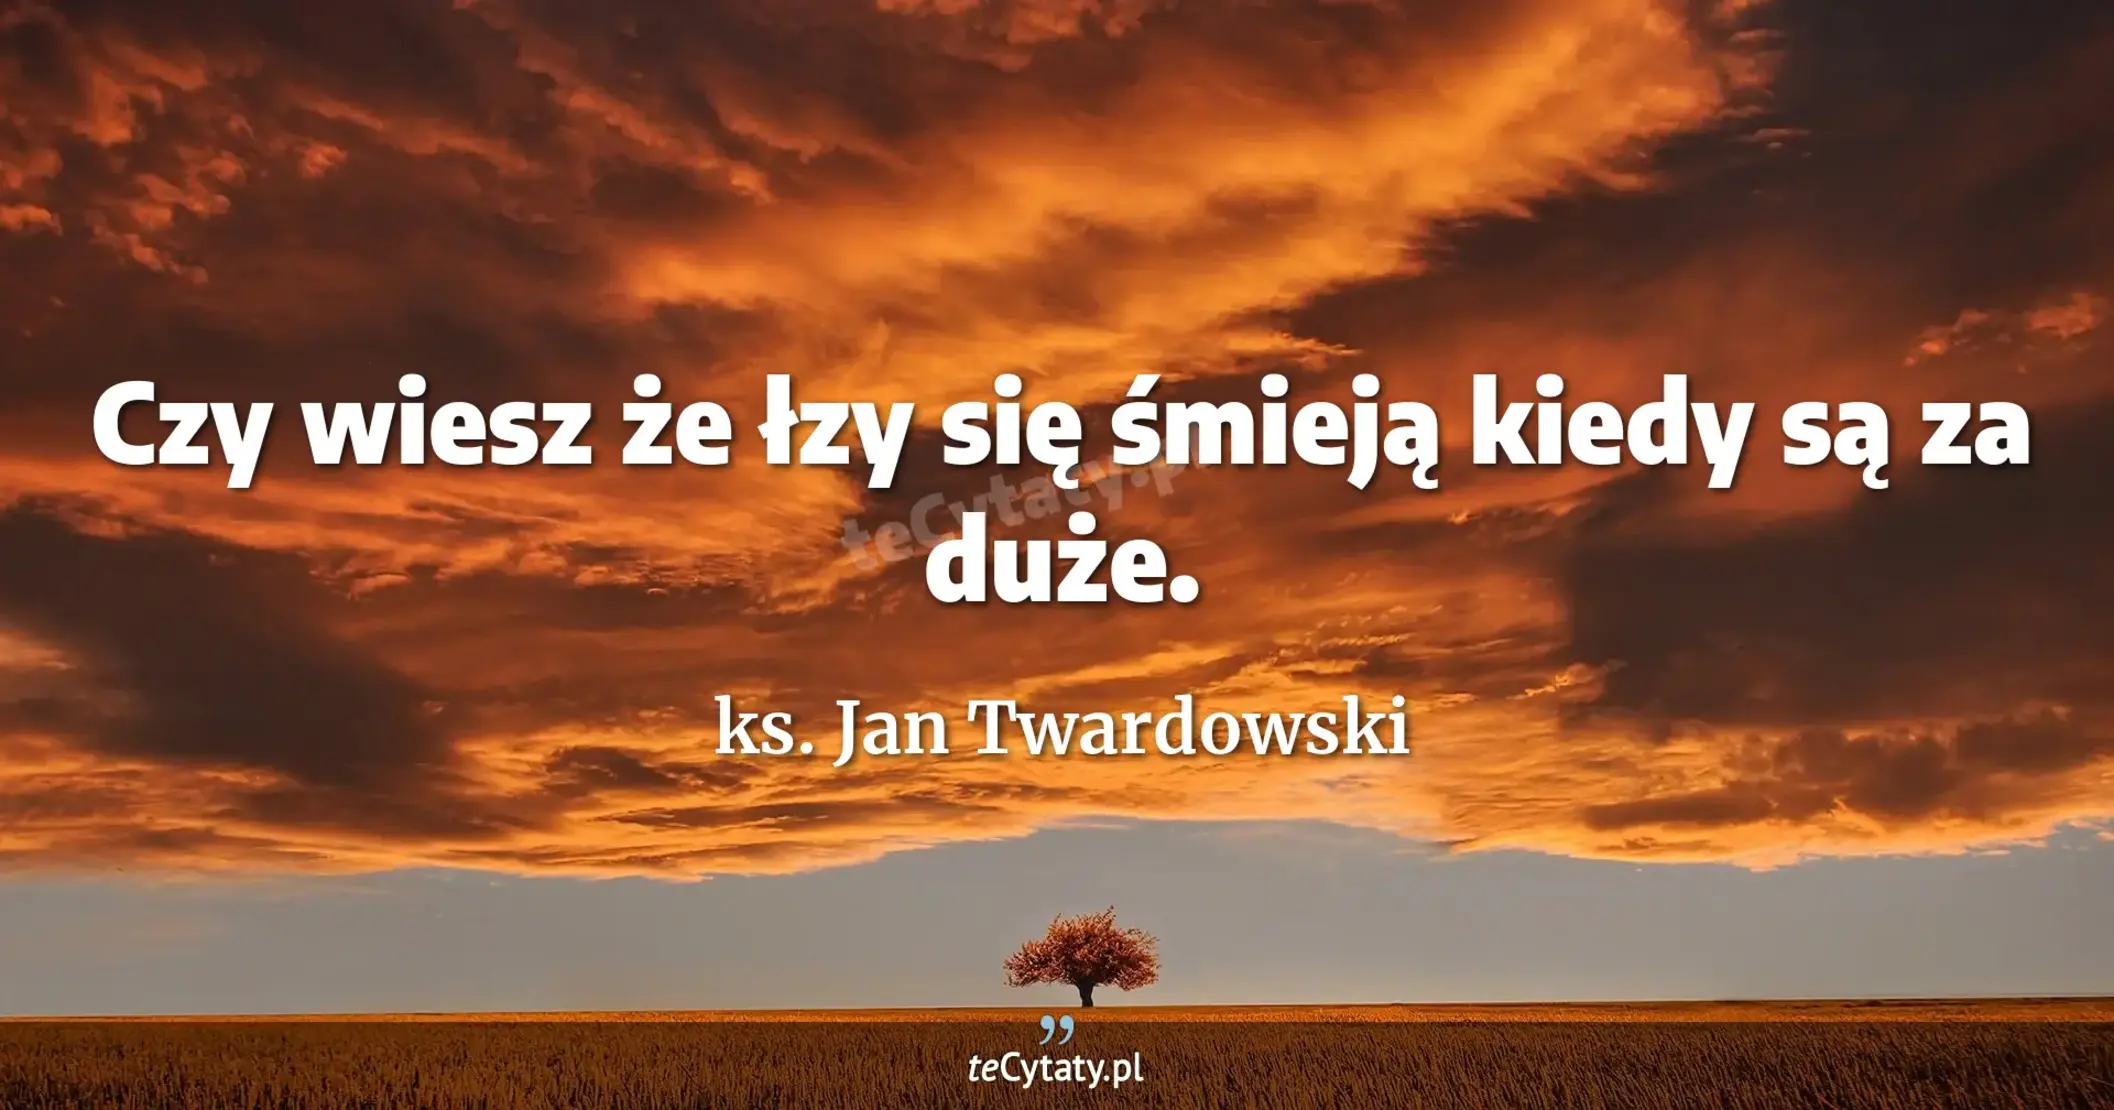 Czy wiesz że łzy się śmieją kiedy są za duże. - ks. Jan Twardowski